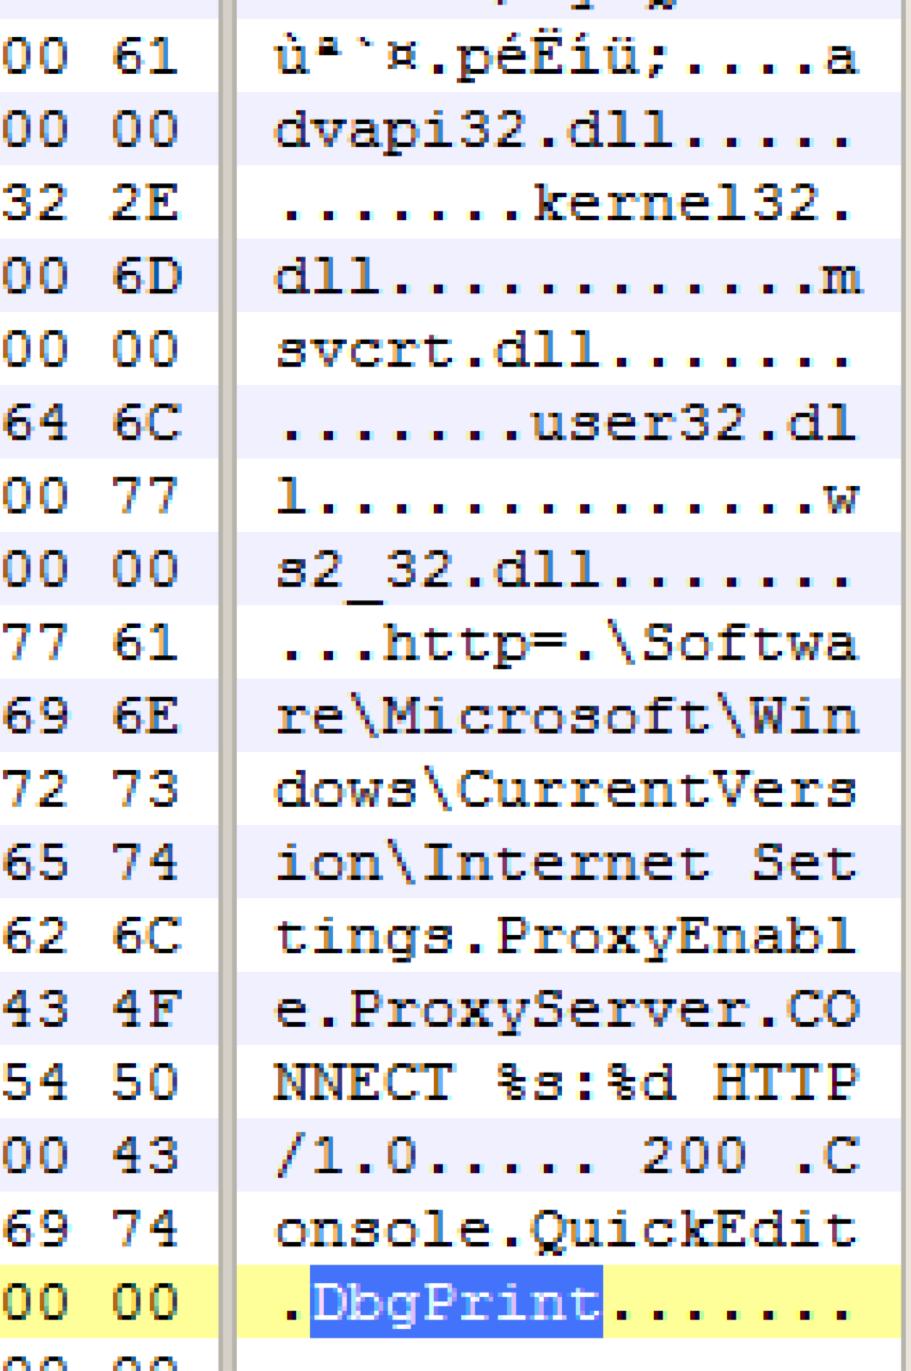 Malware Profile: DBGPRINT u Alias Waterbear u Since at least 2009 u DLL export name DbgPrint u